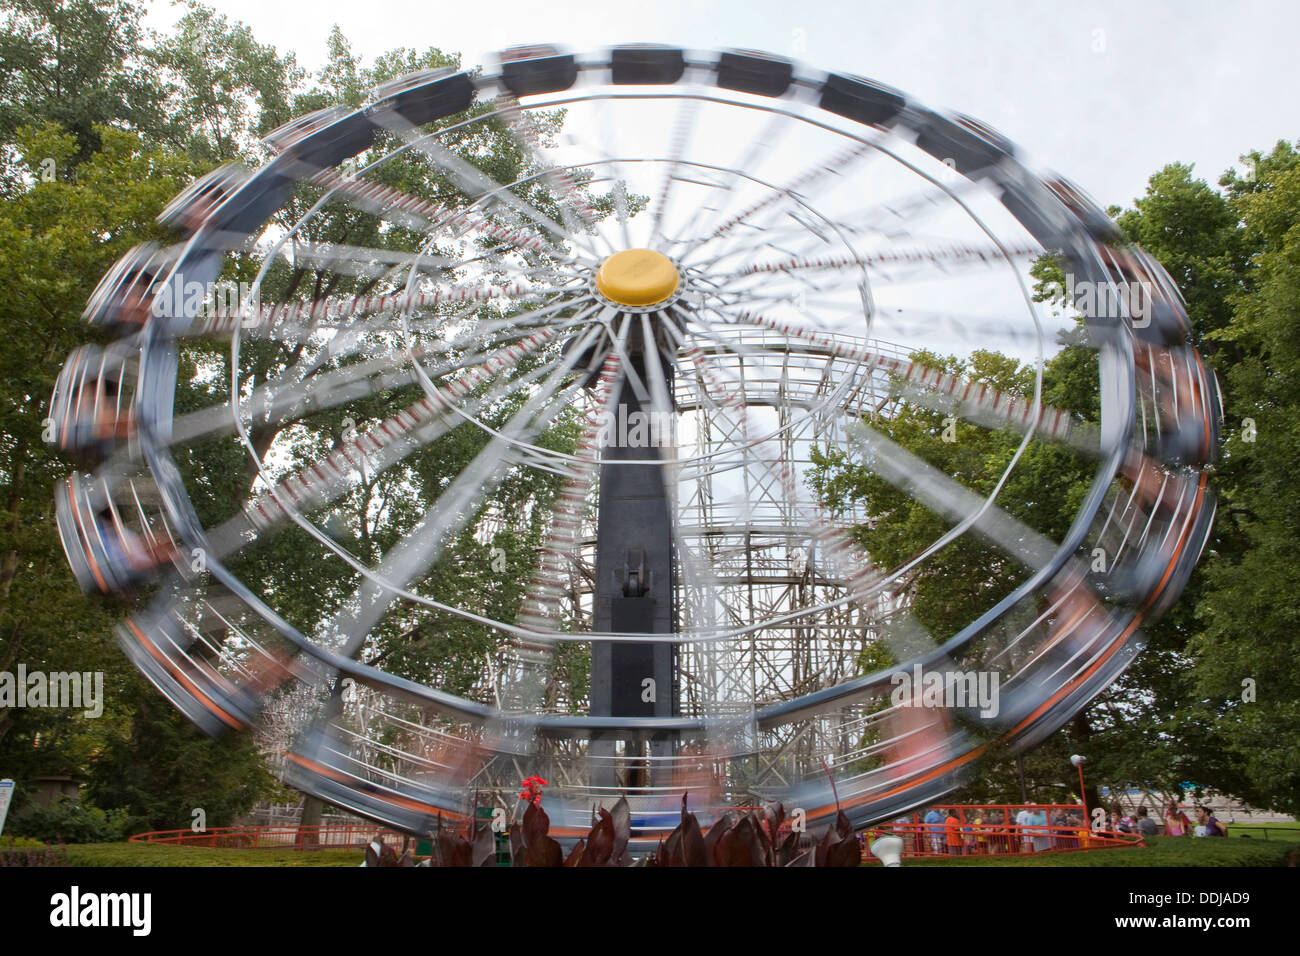 Cedar Point Amusement Park è raffigurato in Sandusky, Ohio Foto Stock